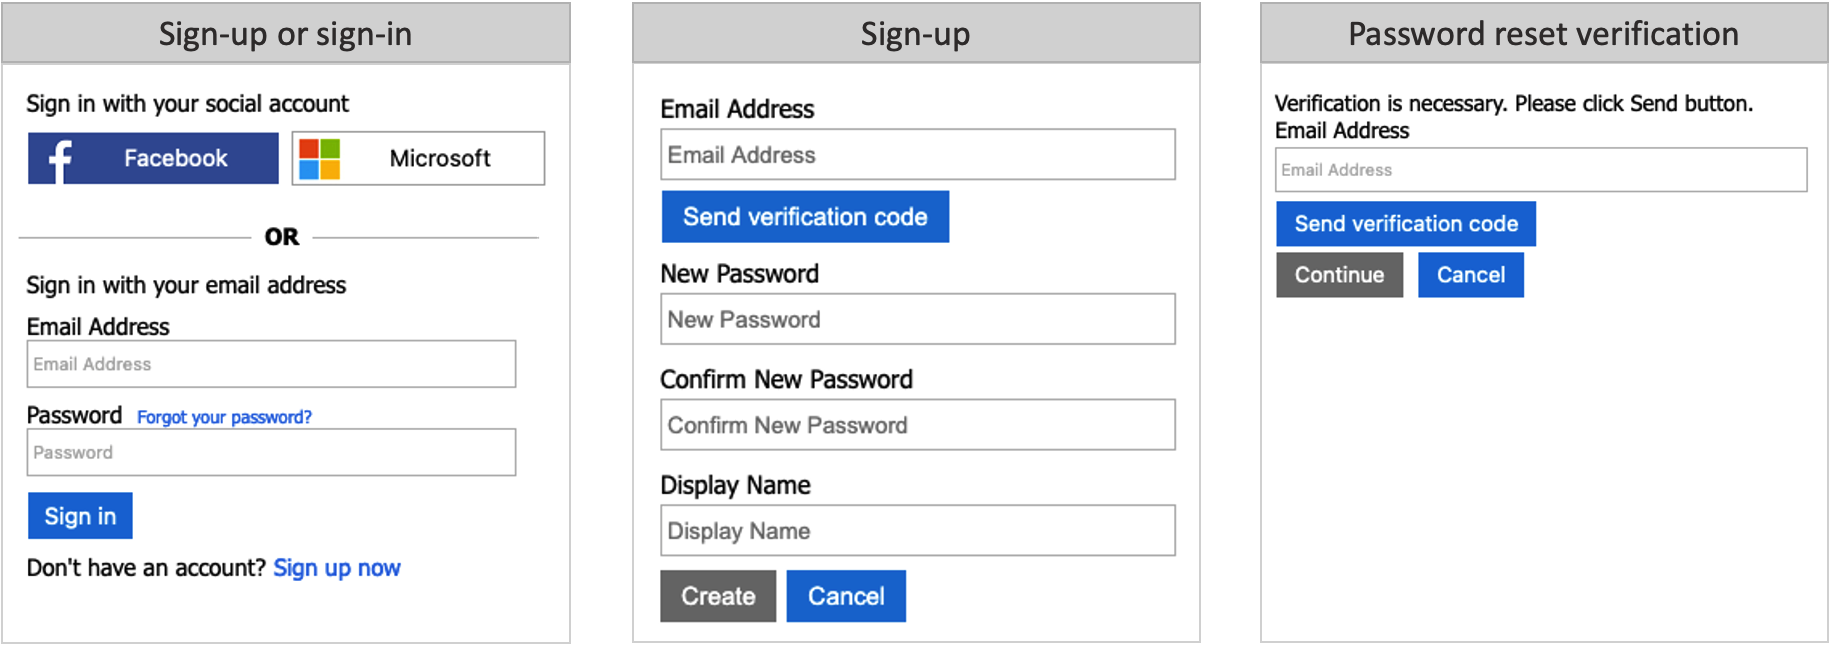 Entrez votre adresse e-mail associée à votre compte Microsoft
Saisissez les caractères de l'image de vérification